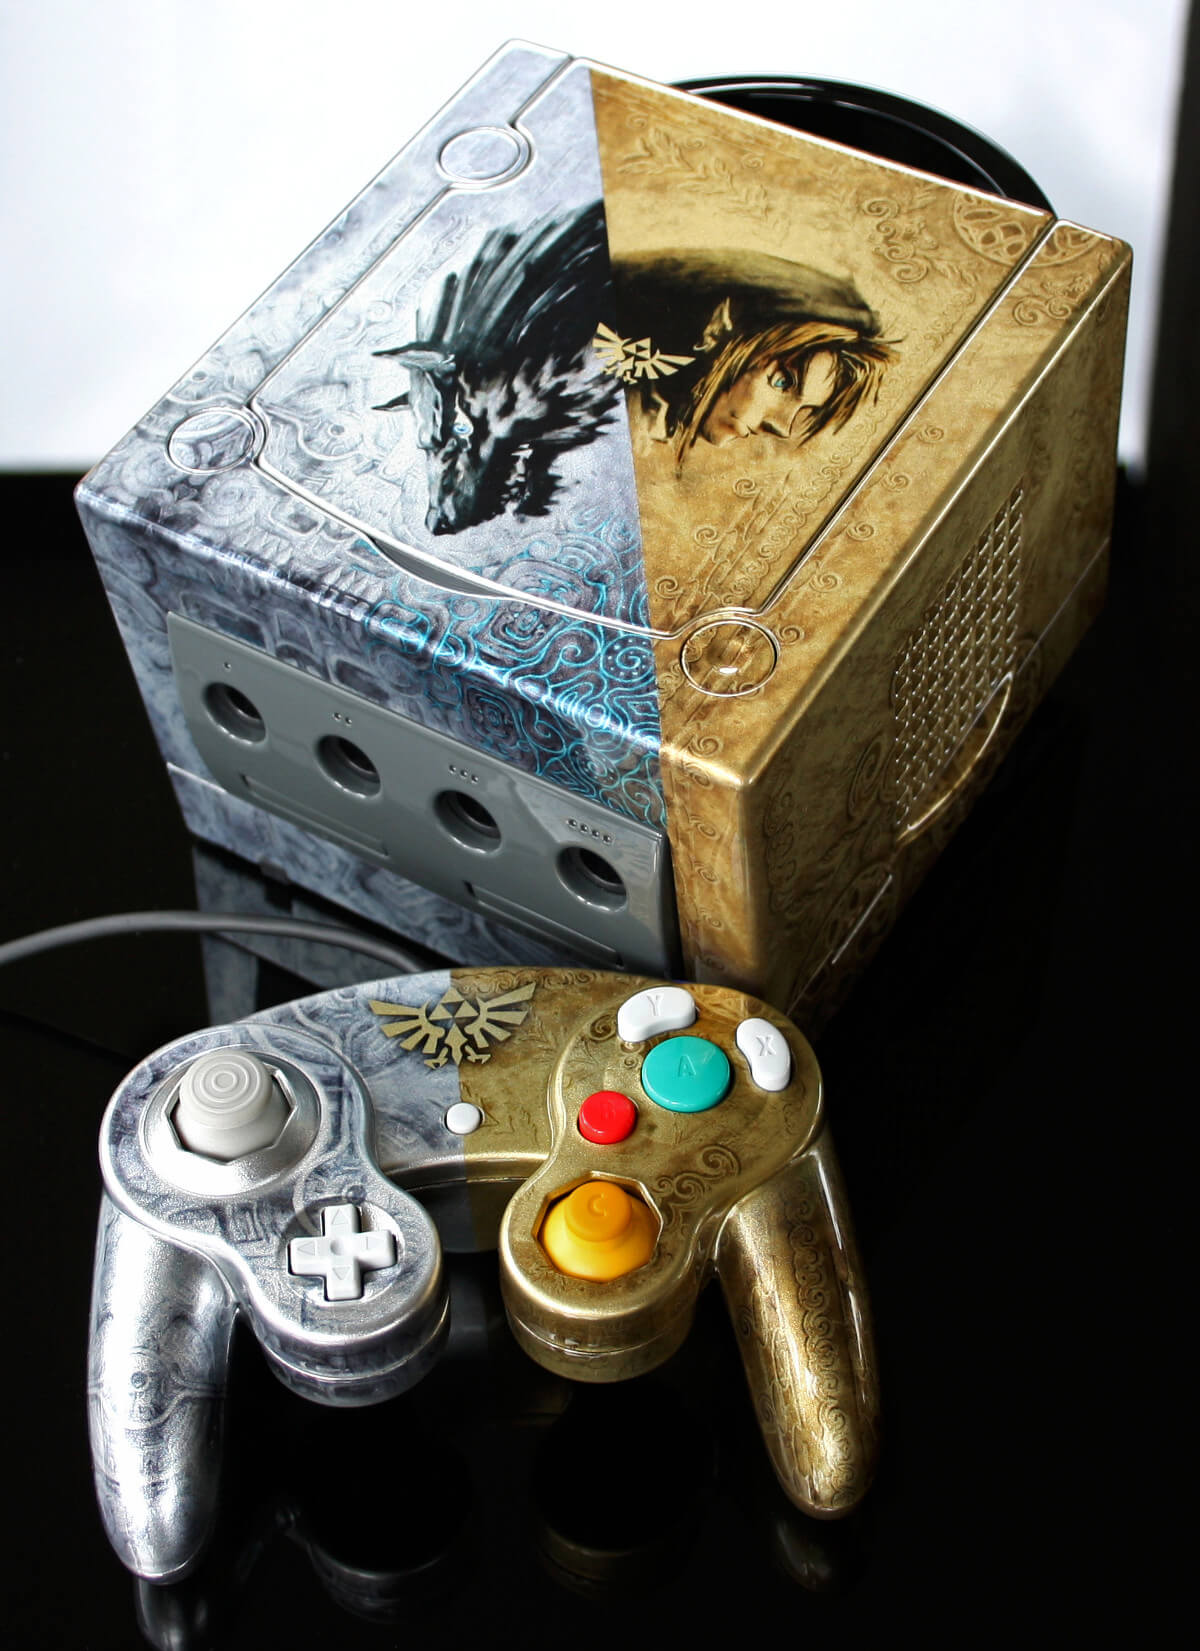 GameCube com tema do The Legend of Zelda Twilight